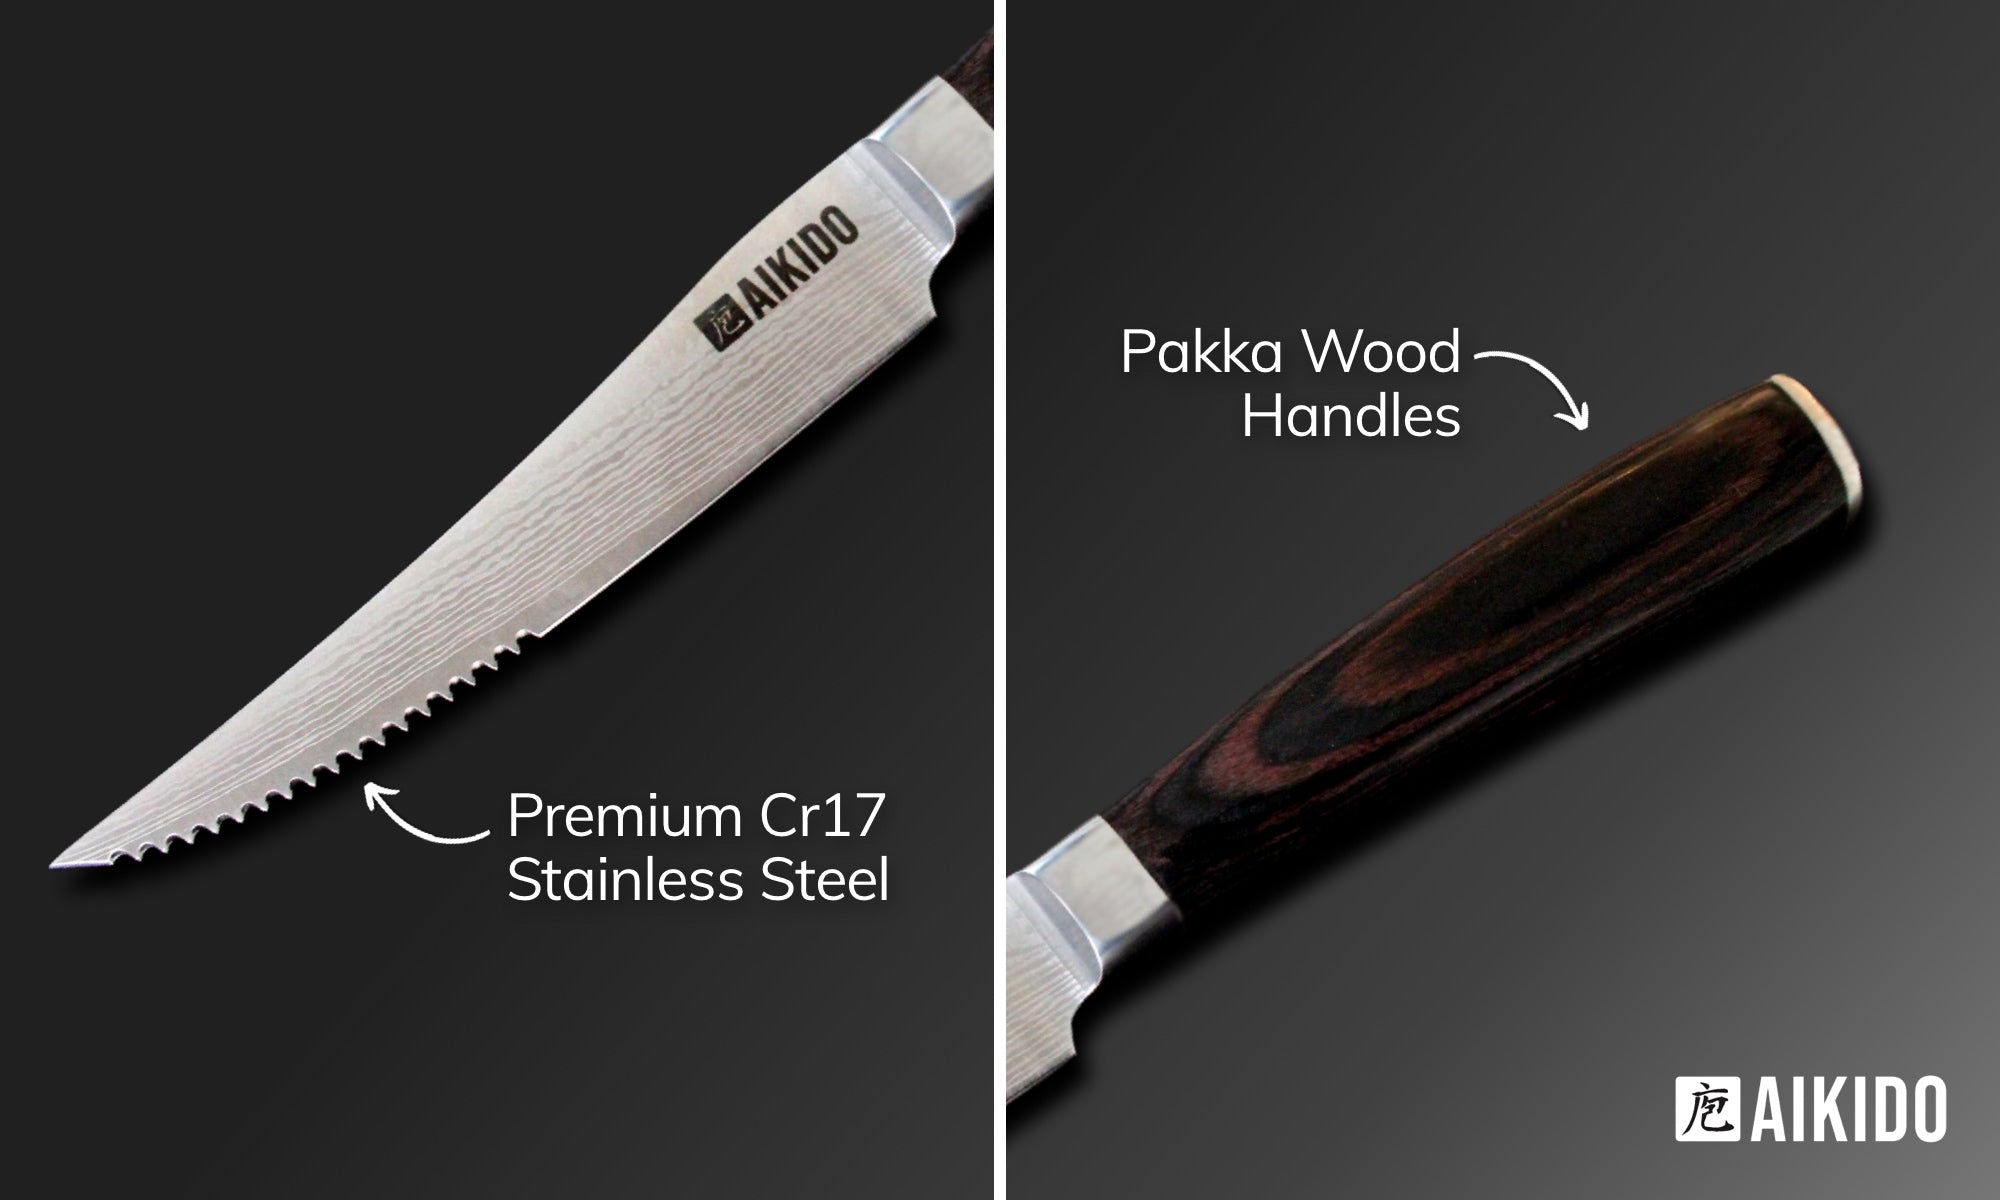 Aikido Steel: Signature 7-Piece Knife Set 